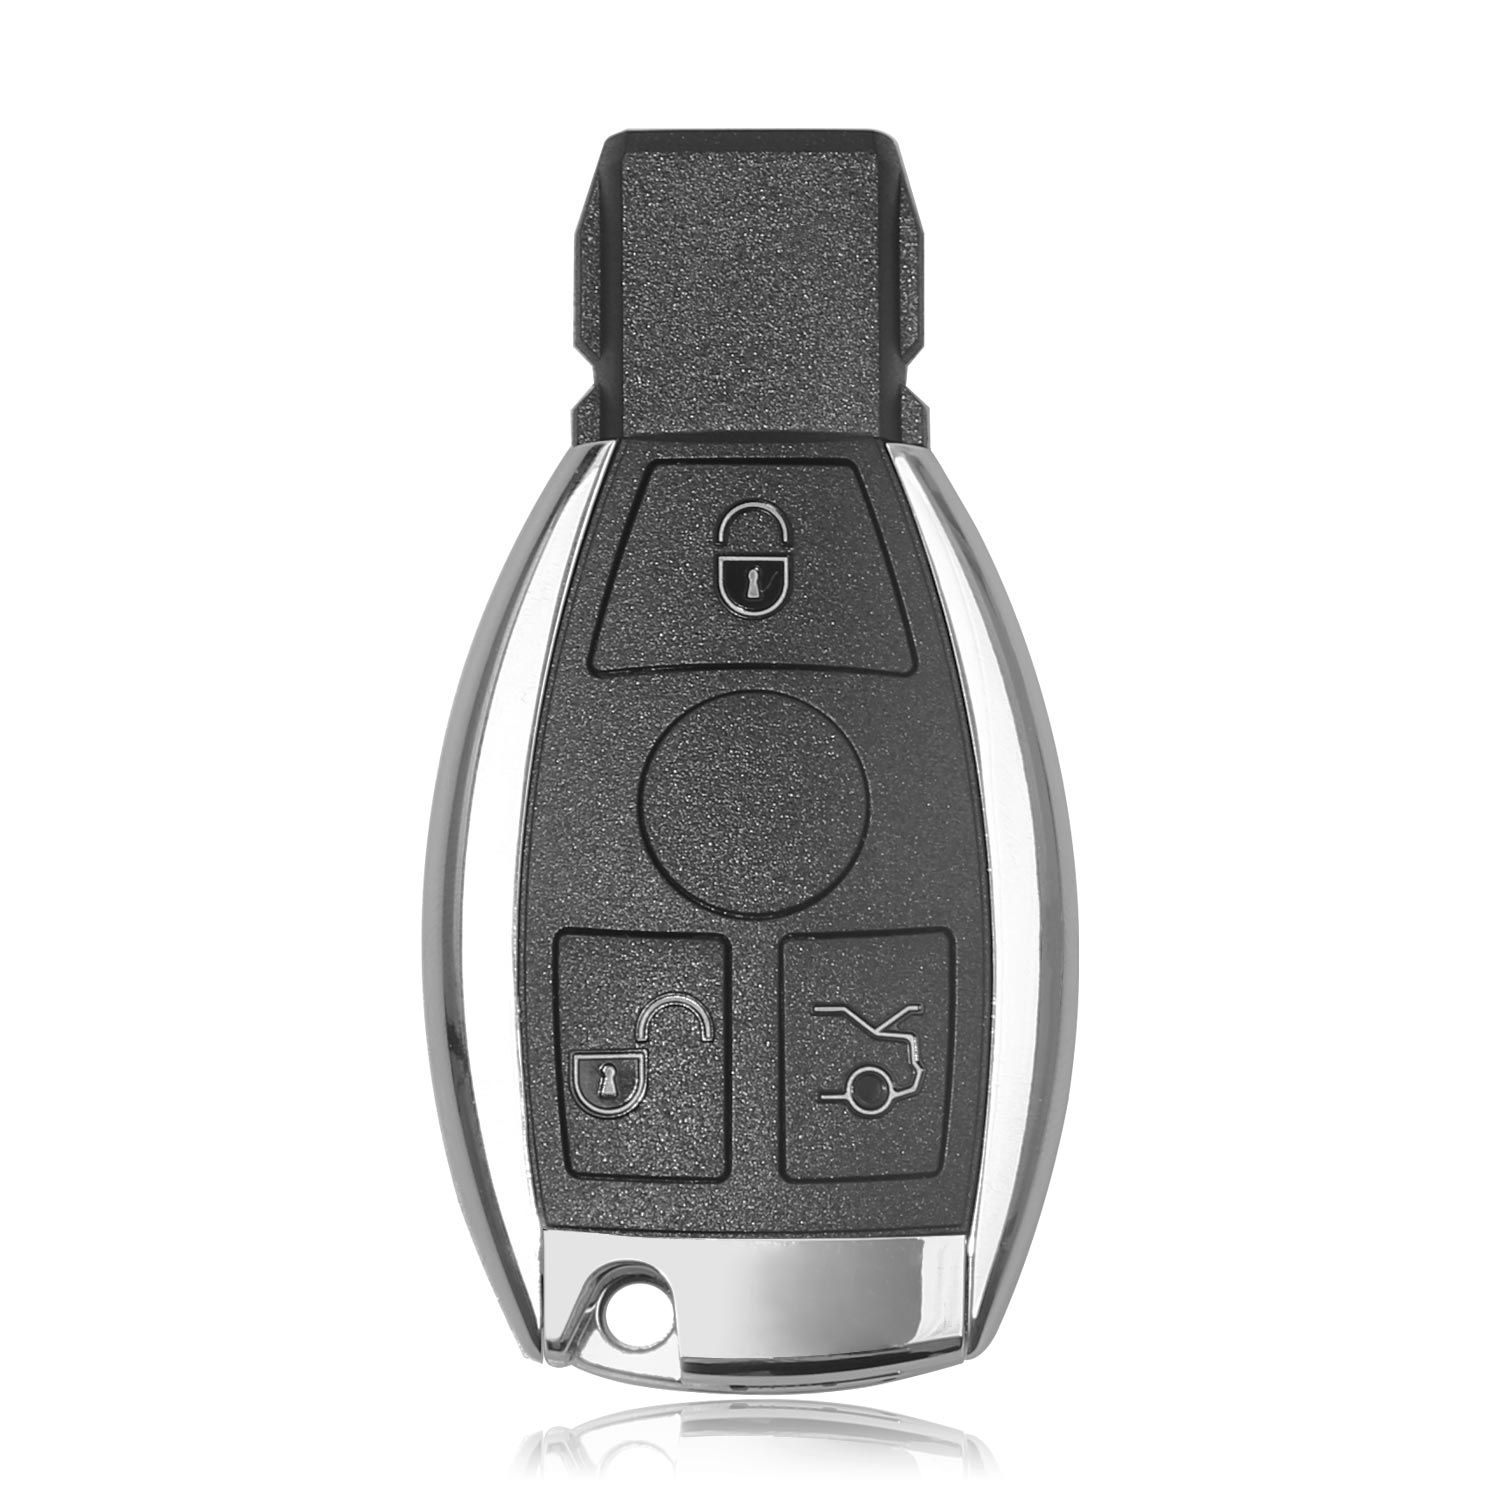 10개의 Xhorse VVDI BE Key Pro 스마트 키 케이스 메르세데스-벤츠 3개의 버튼으로 10개의 VVDI MB 도구 무료 토큰 획득